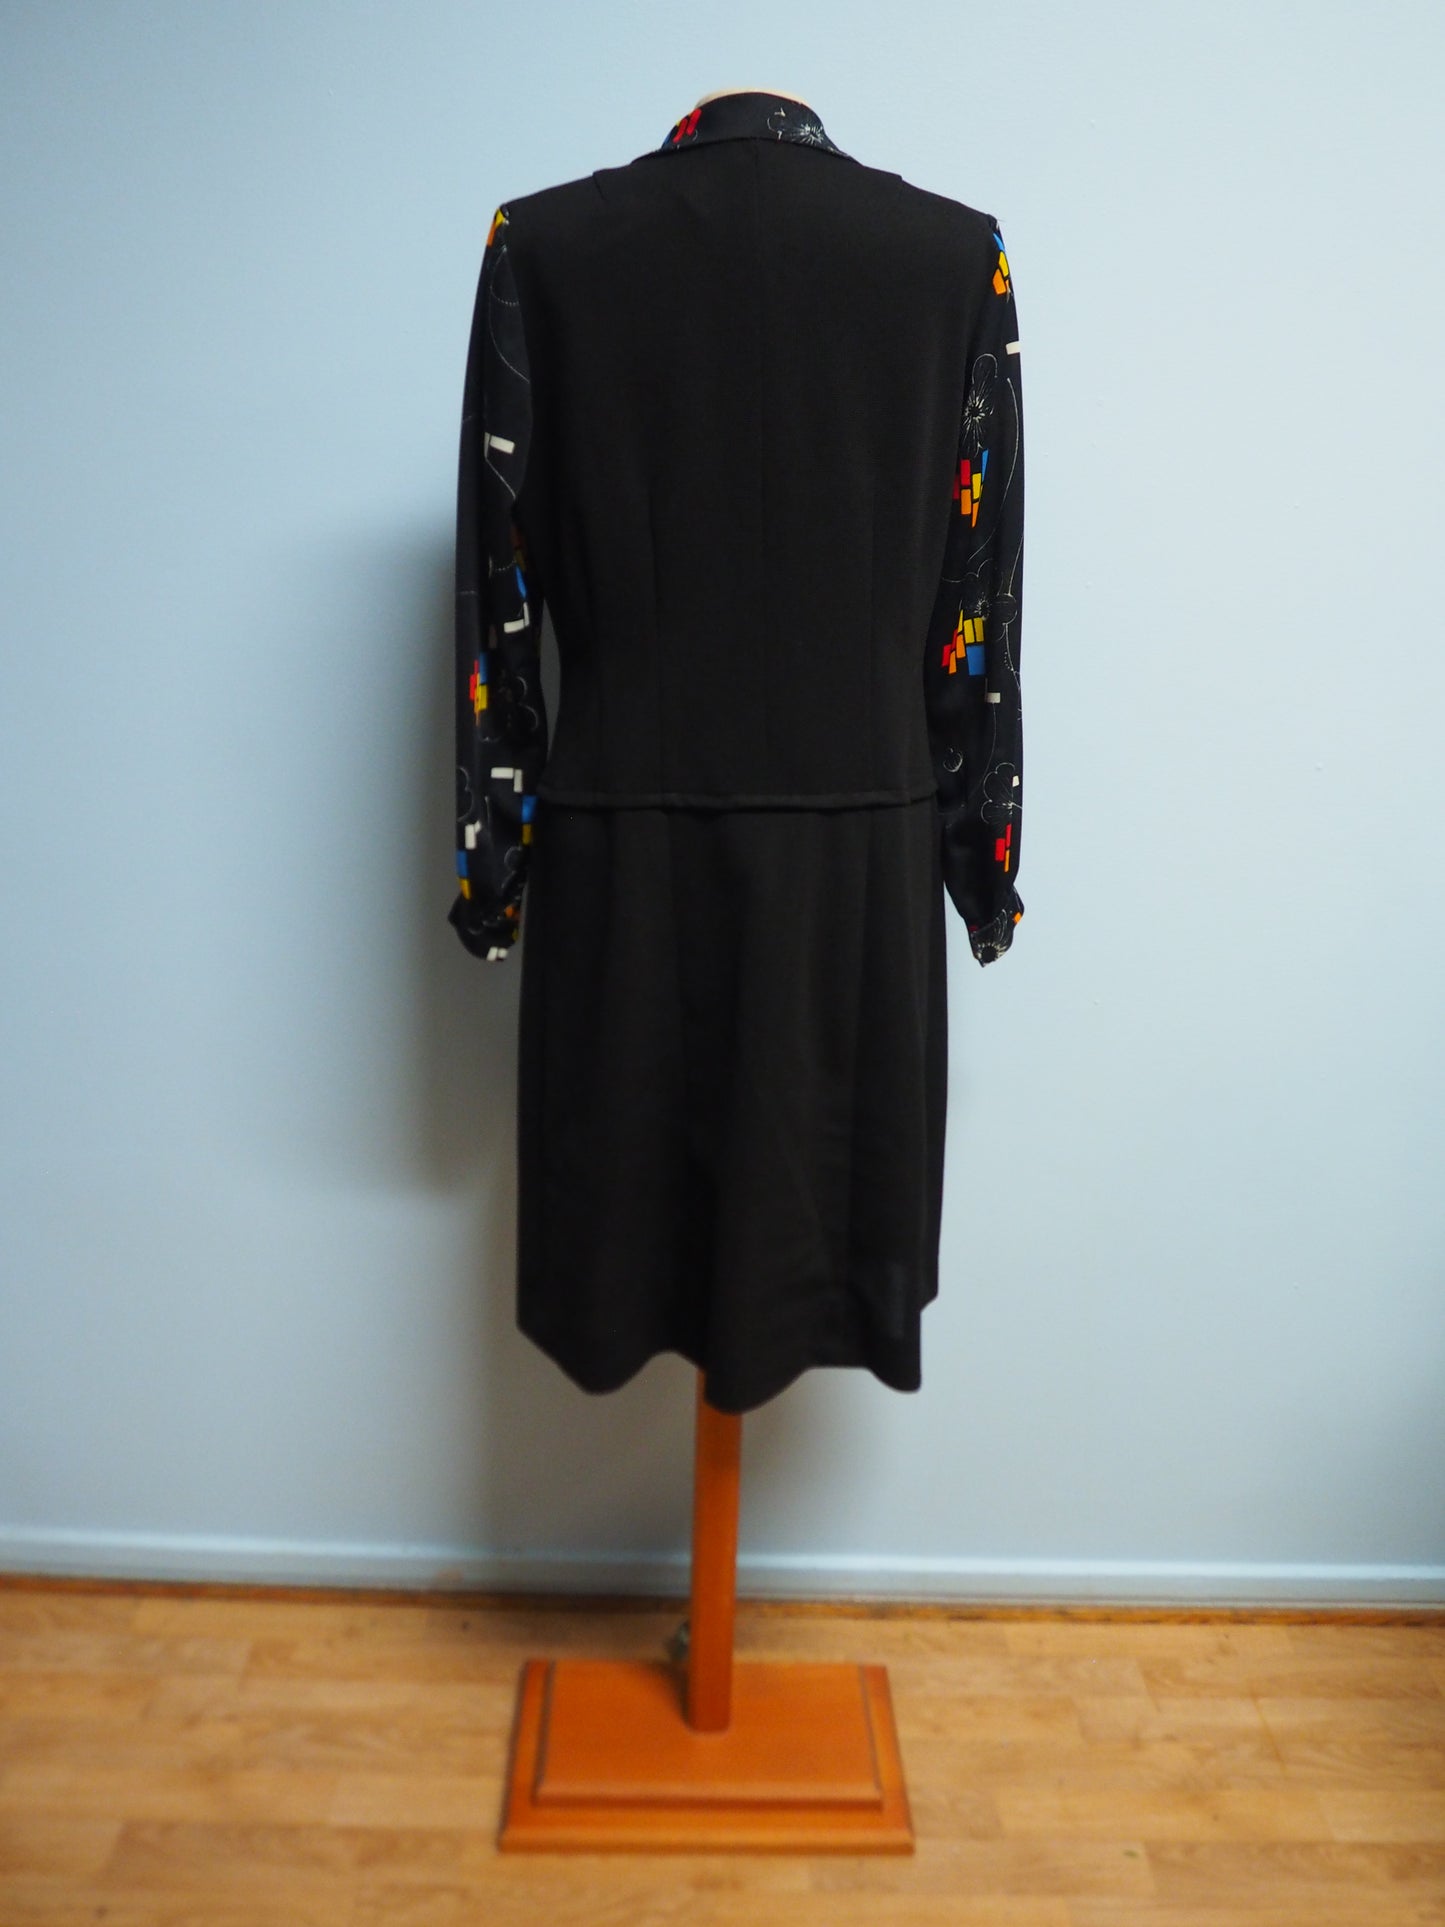 Musta huivikaulus kuviollinen mekko